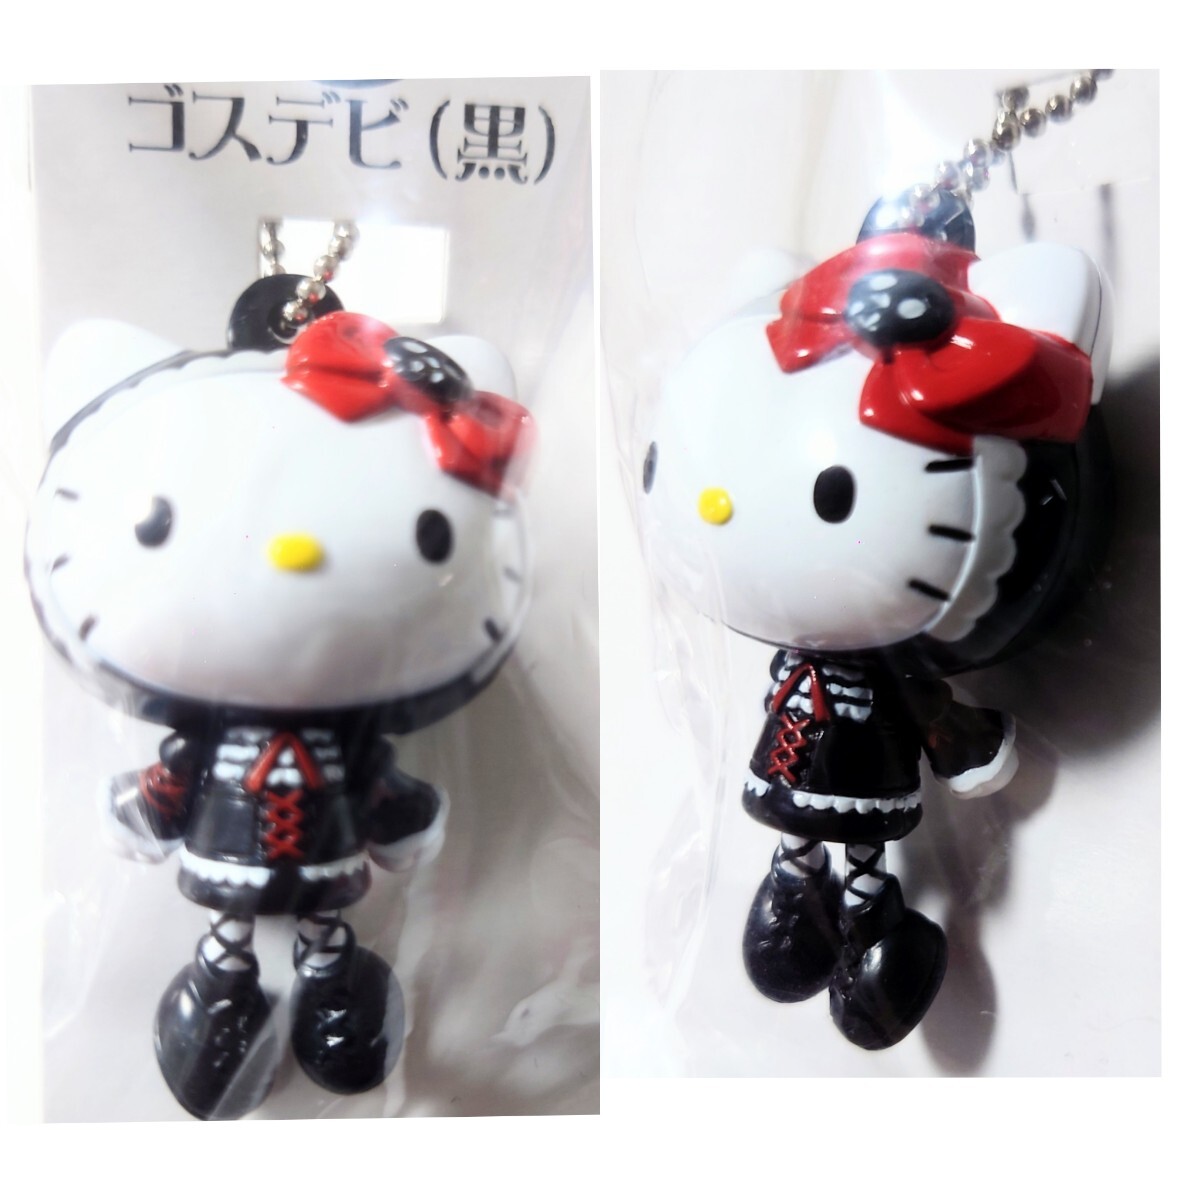  Shokugan Hello Kitty Hello Kitty..roli ball chain swing mascot Lolita rabbit cat Van p Gothic and Lolita gothic 2006 year 